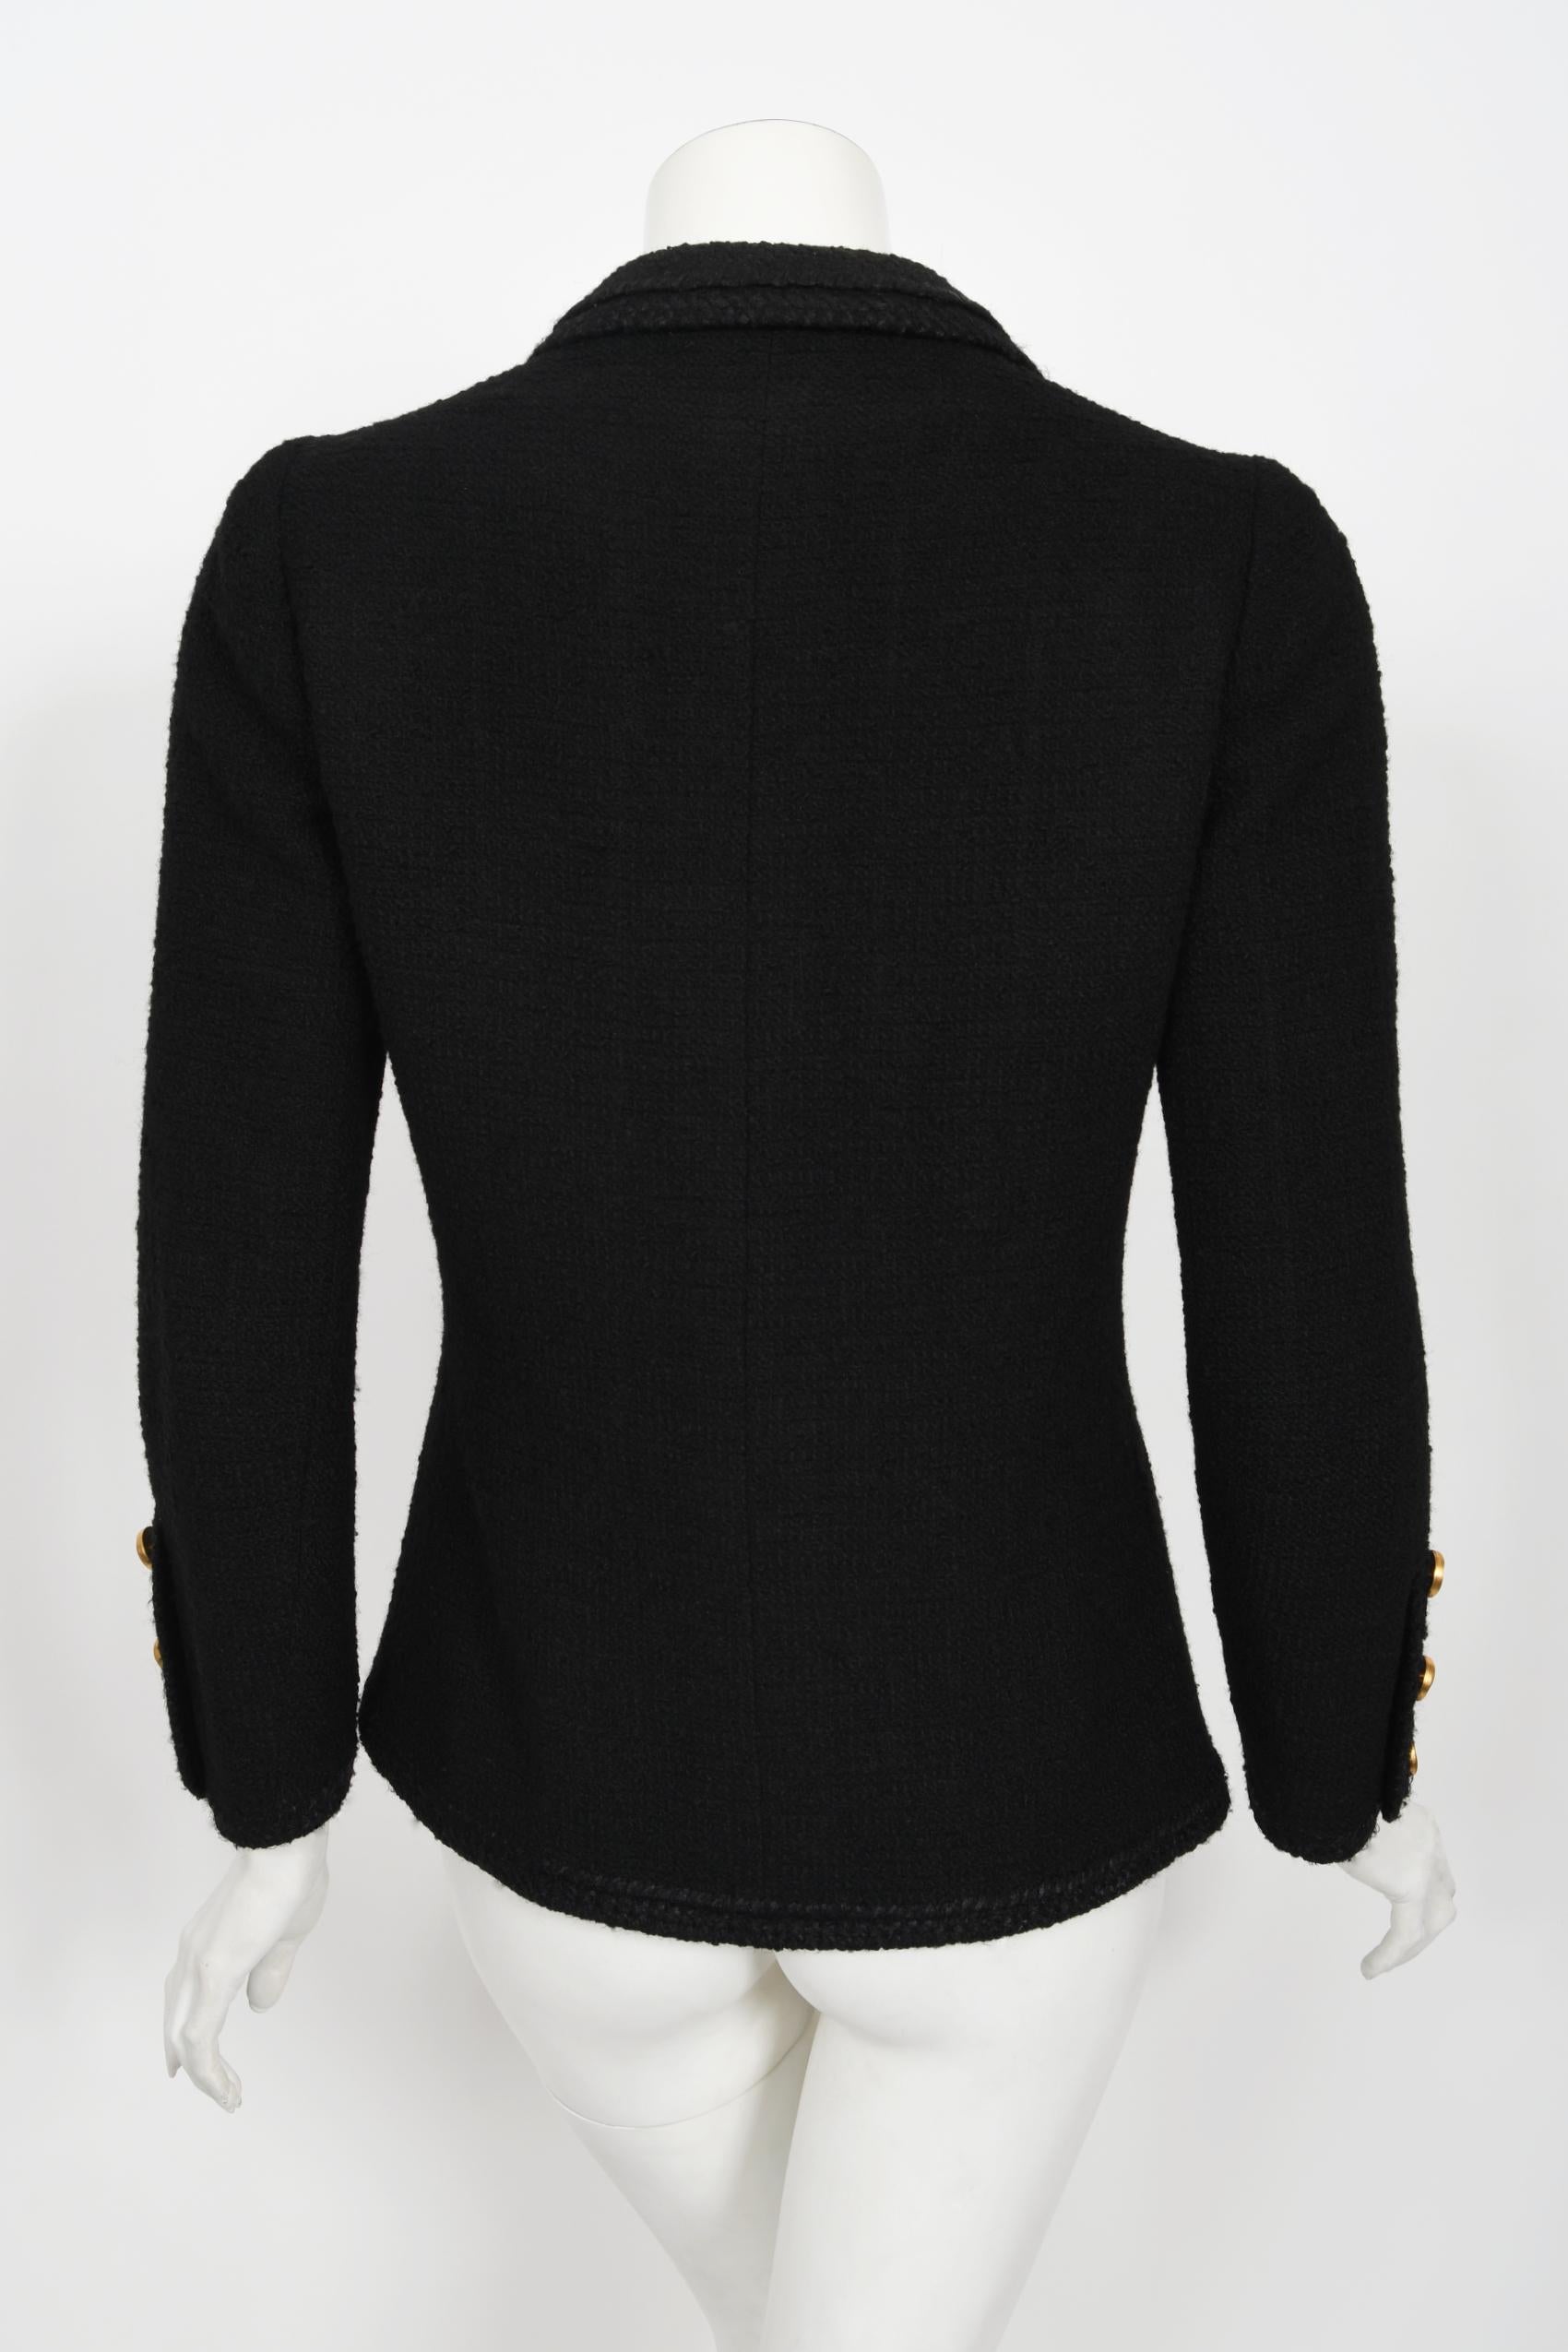 Vintage 1973 Chanel Haute Couture Black Boucle Wool Logo Buttons Jacket Suit  12